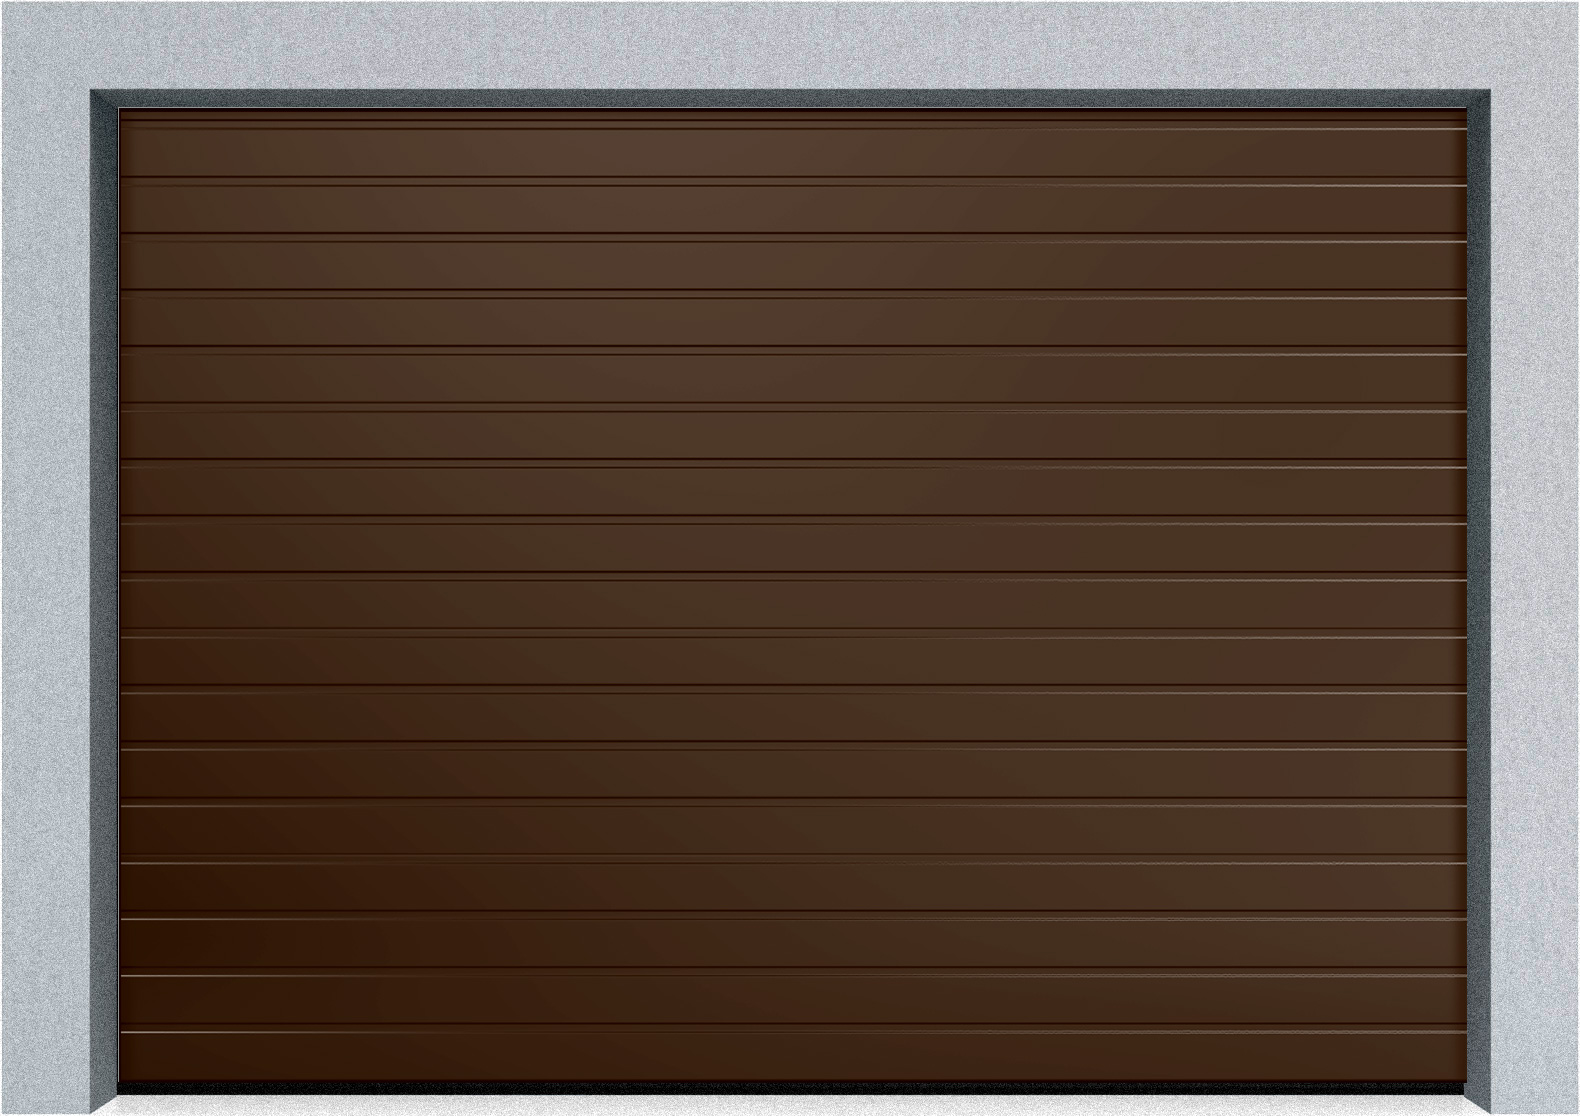  Автоматические секционные промышленные ворота DoorHan ISD ThermalPro 3600x2300 S-гофр, M-гофр, Микроволна стандартные цвета, фото 2 